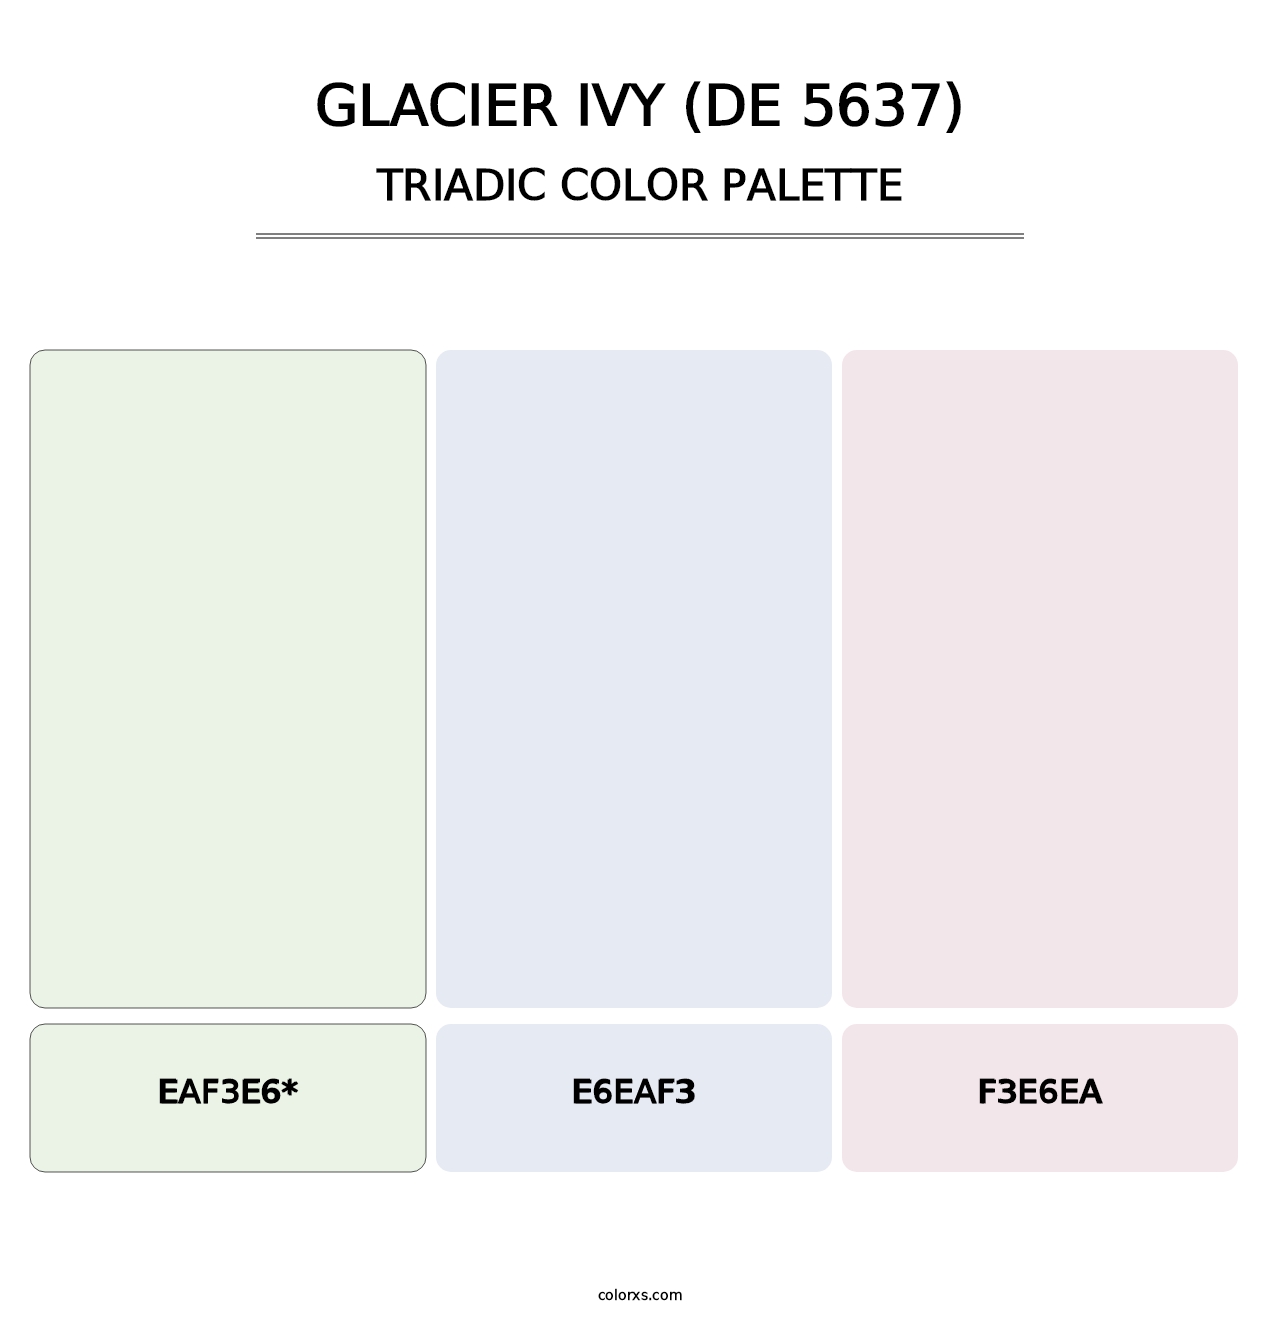 Glacier Ivy (DE 5637) - Triadic Color Palette